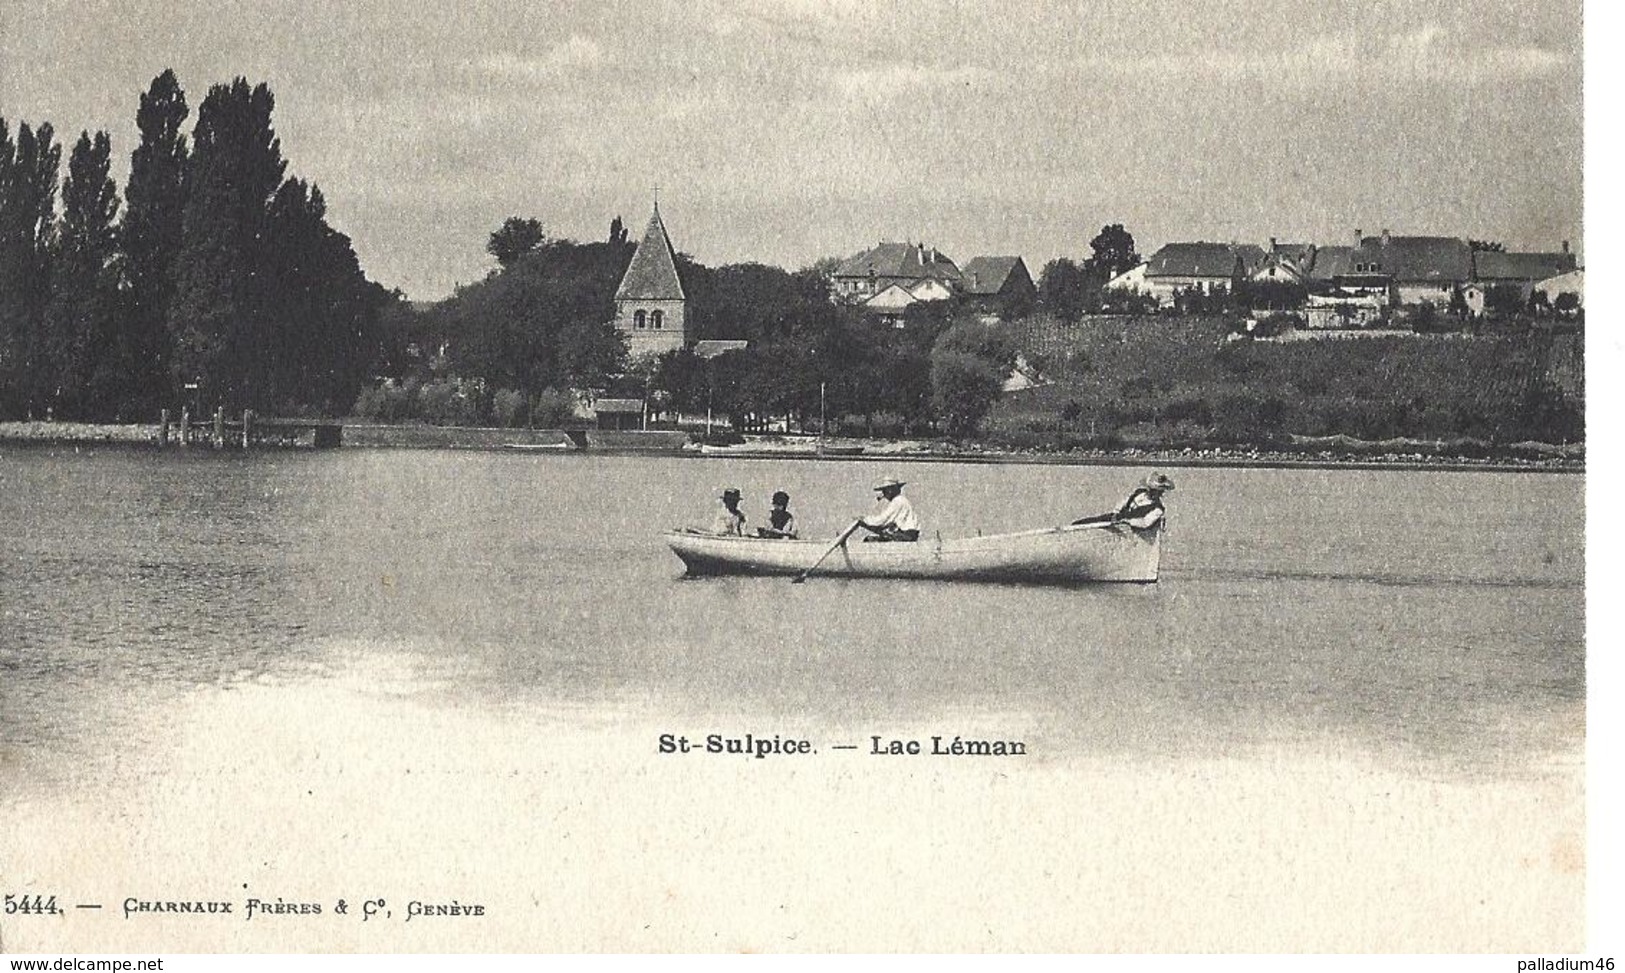 VAUD SAINT SULPICE St. Sulpice Lac Léman	Charnaux Frères & Co, Genève No 5444 - NON CIRCULEE ETAT EXCELLENT - Saint-Sulpice